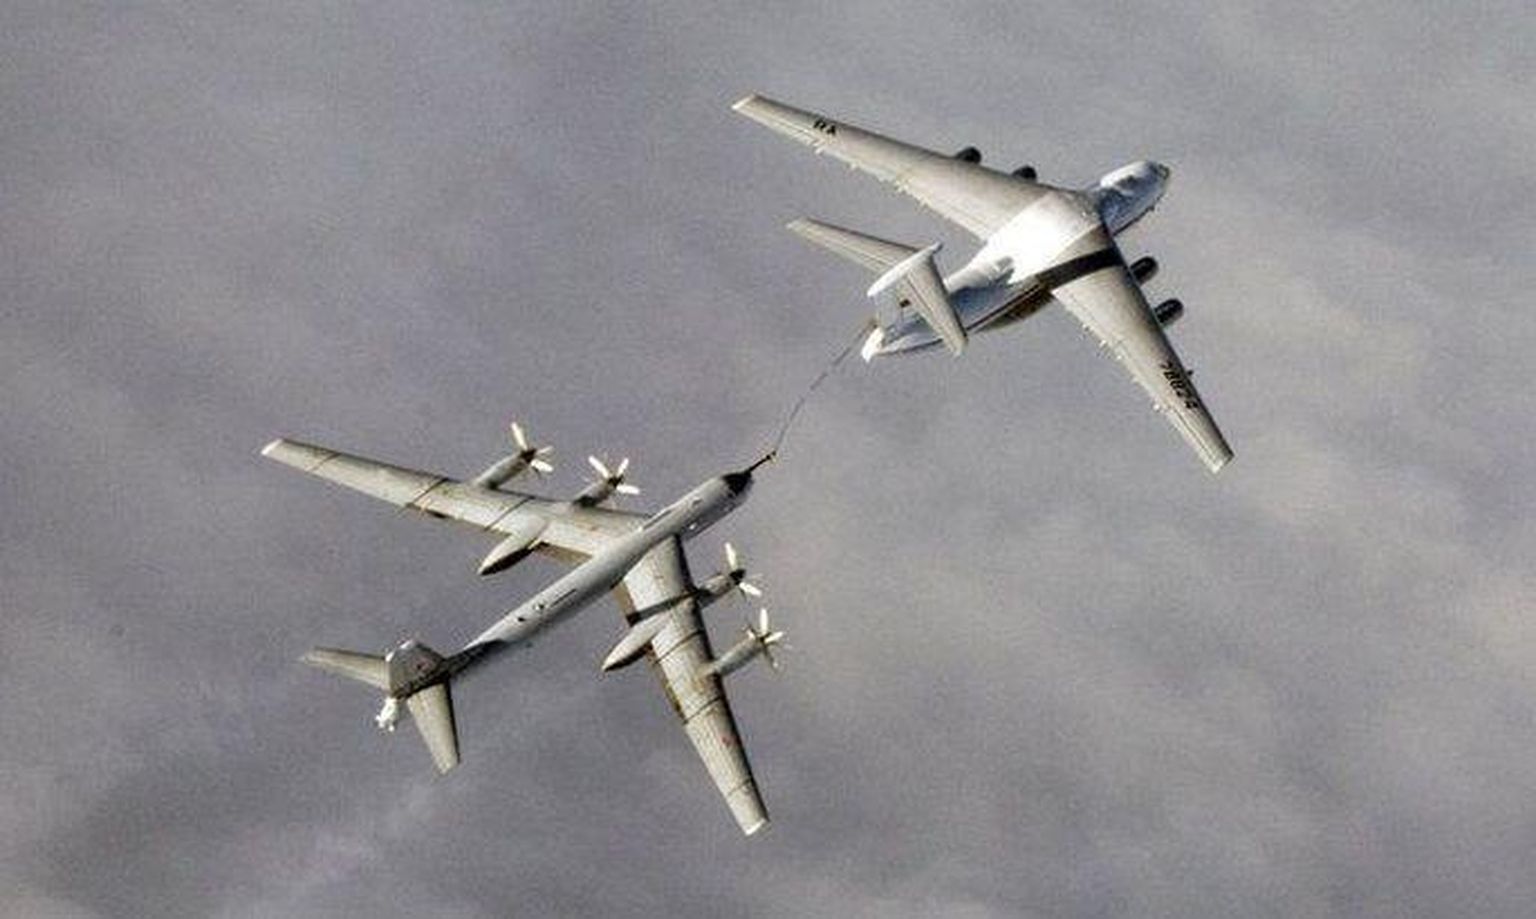 Venemaa lennukid rikkusid õhupiiri. Foto on illustreeriv.